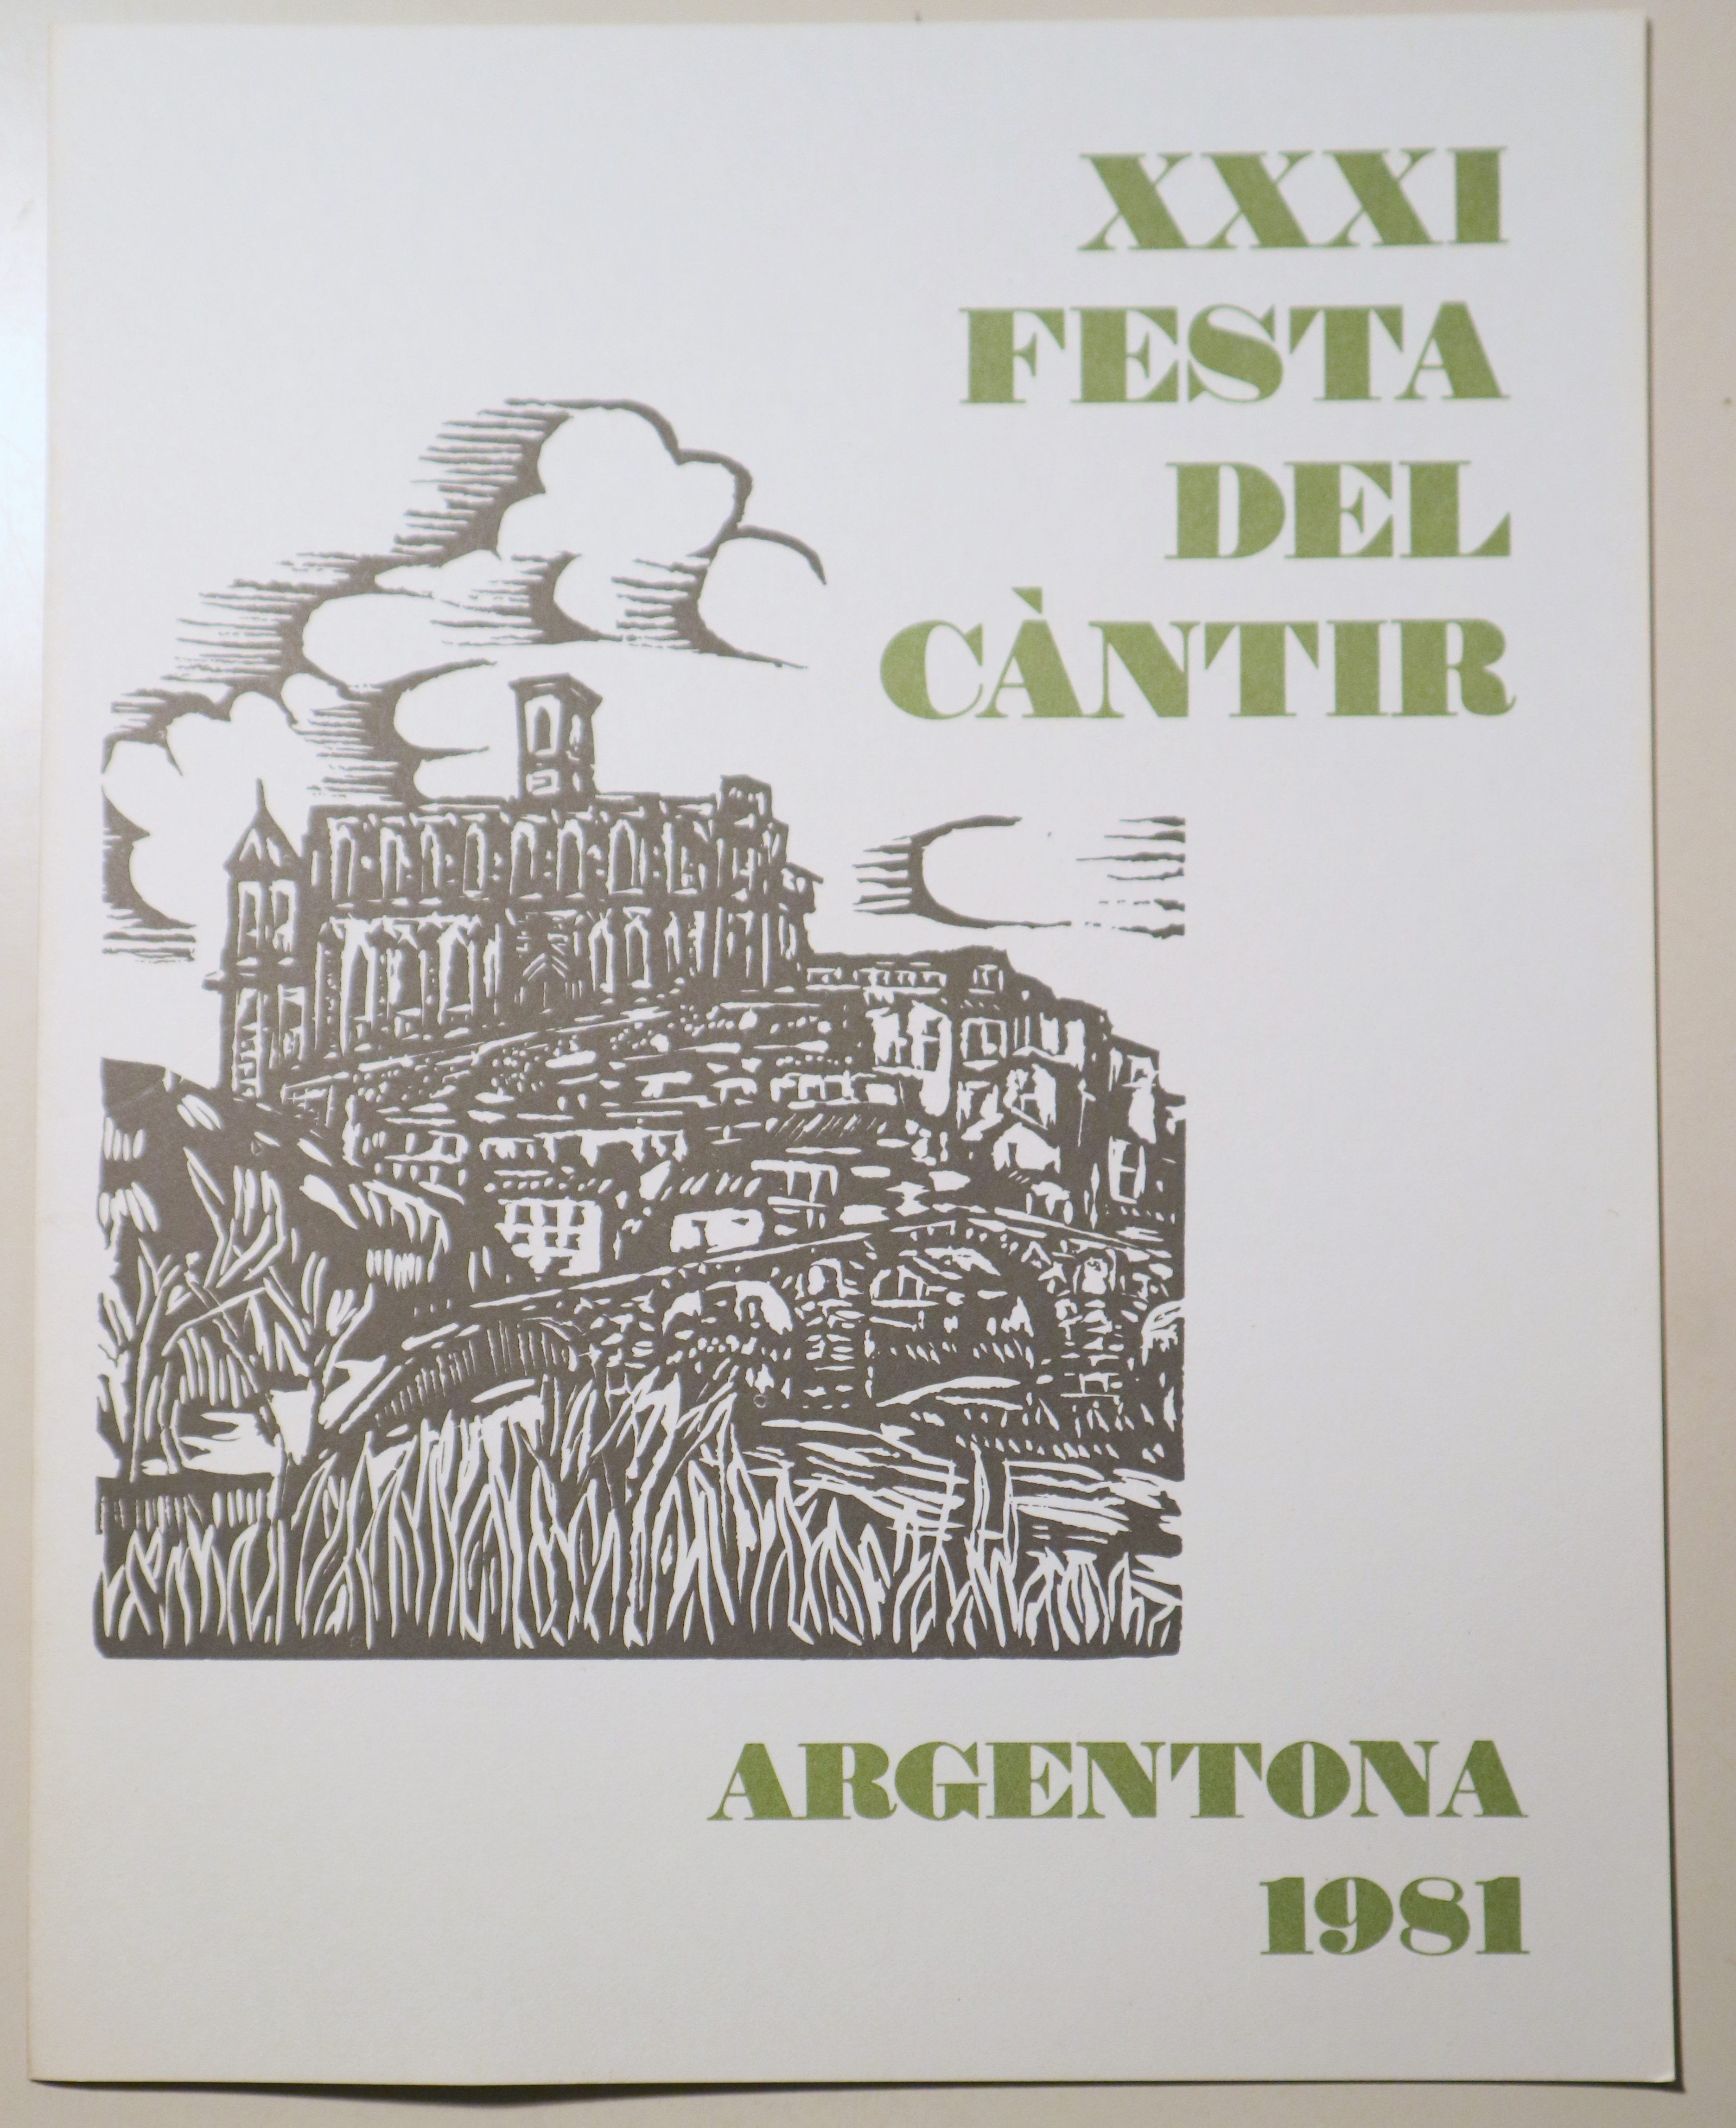 XXXI FESTA DEL CÀNTIR - Argentona 1981